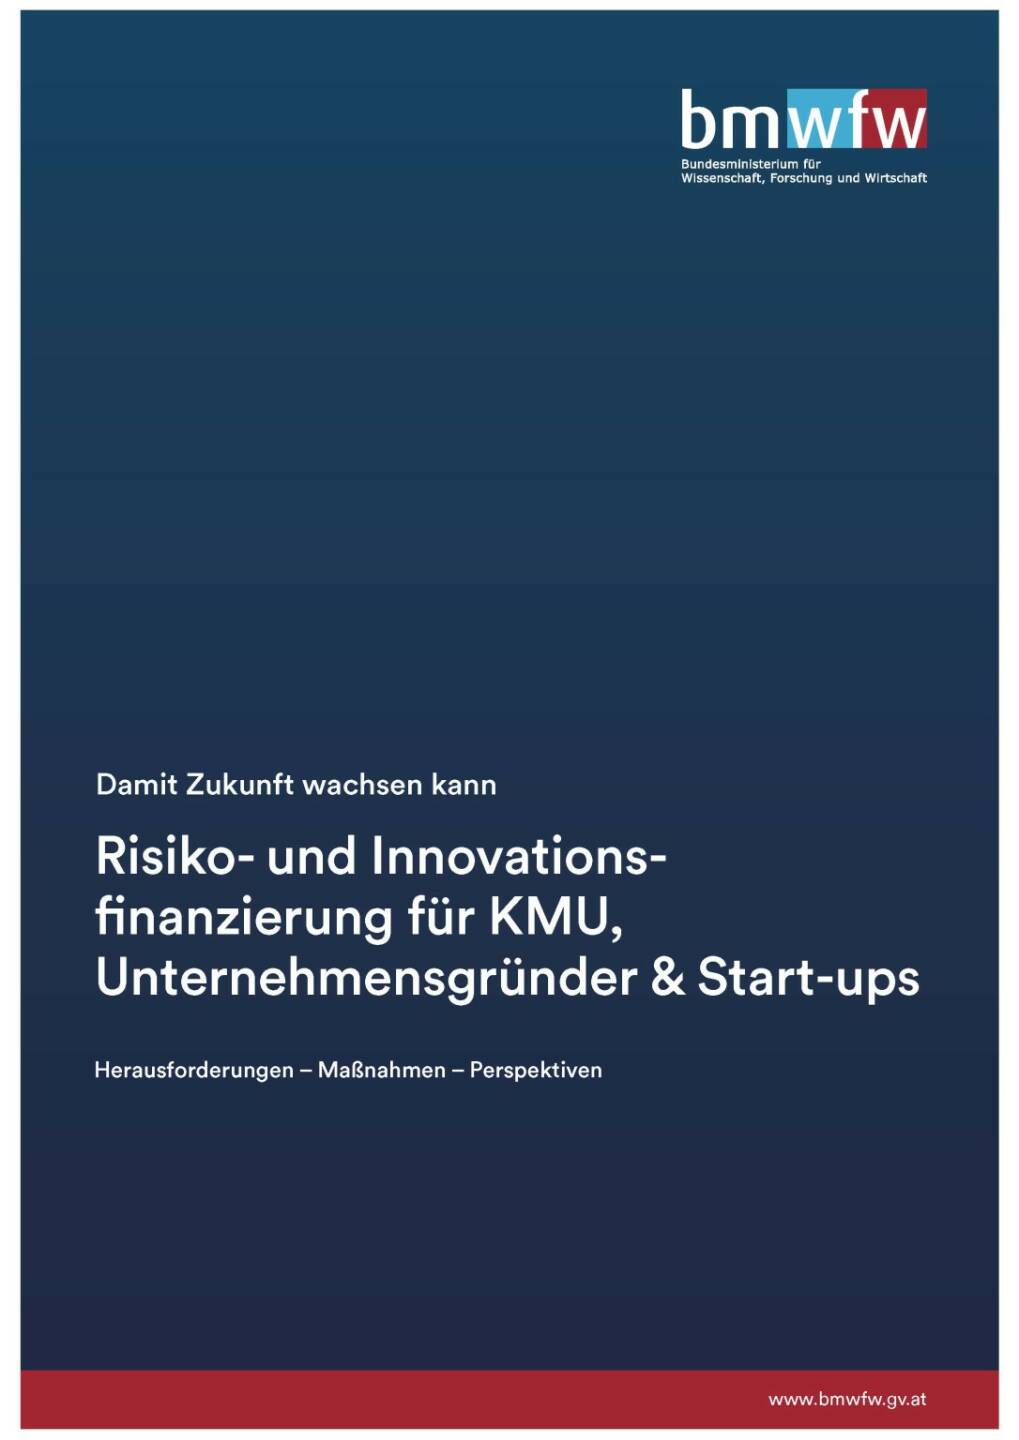 Risiko- und Innovationsfinanzierung für KMU, Unternehmensgründer & Start-ups